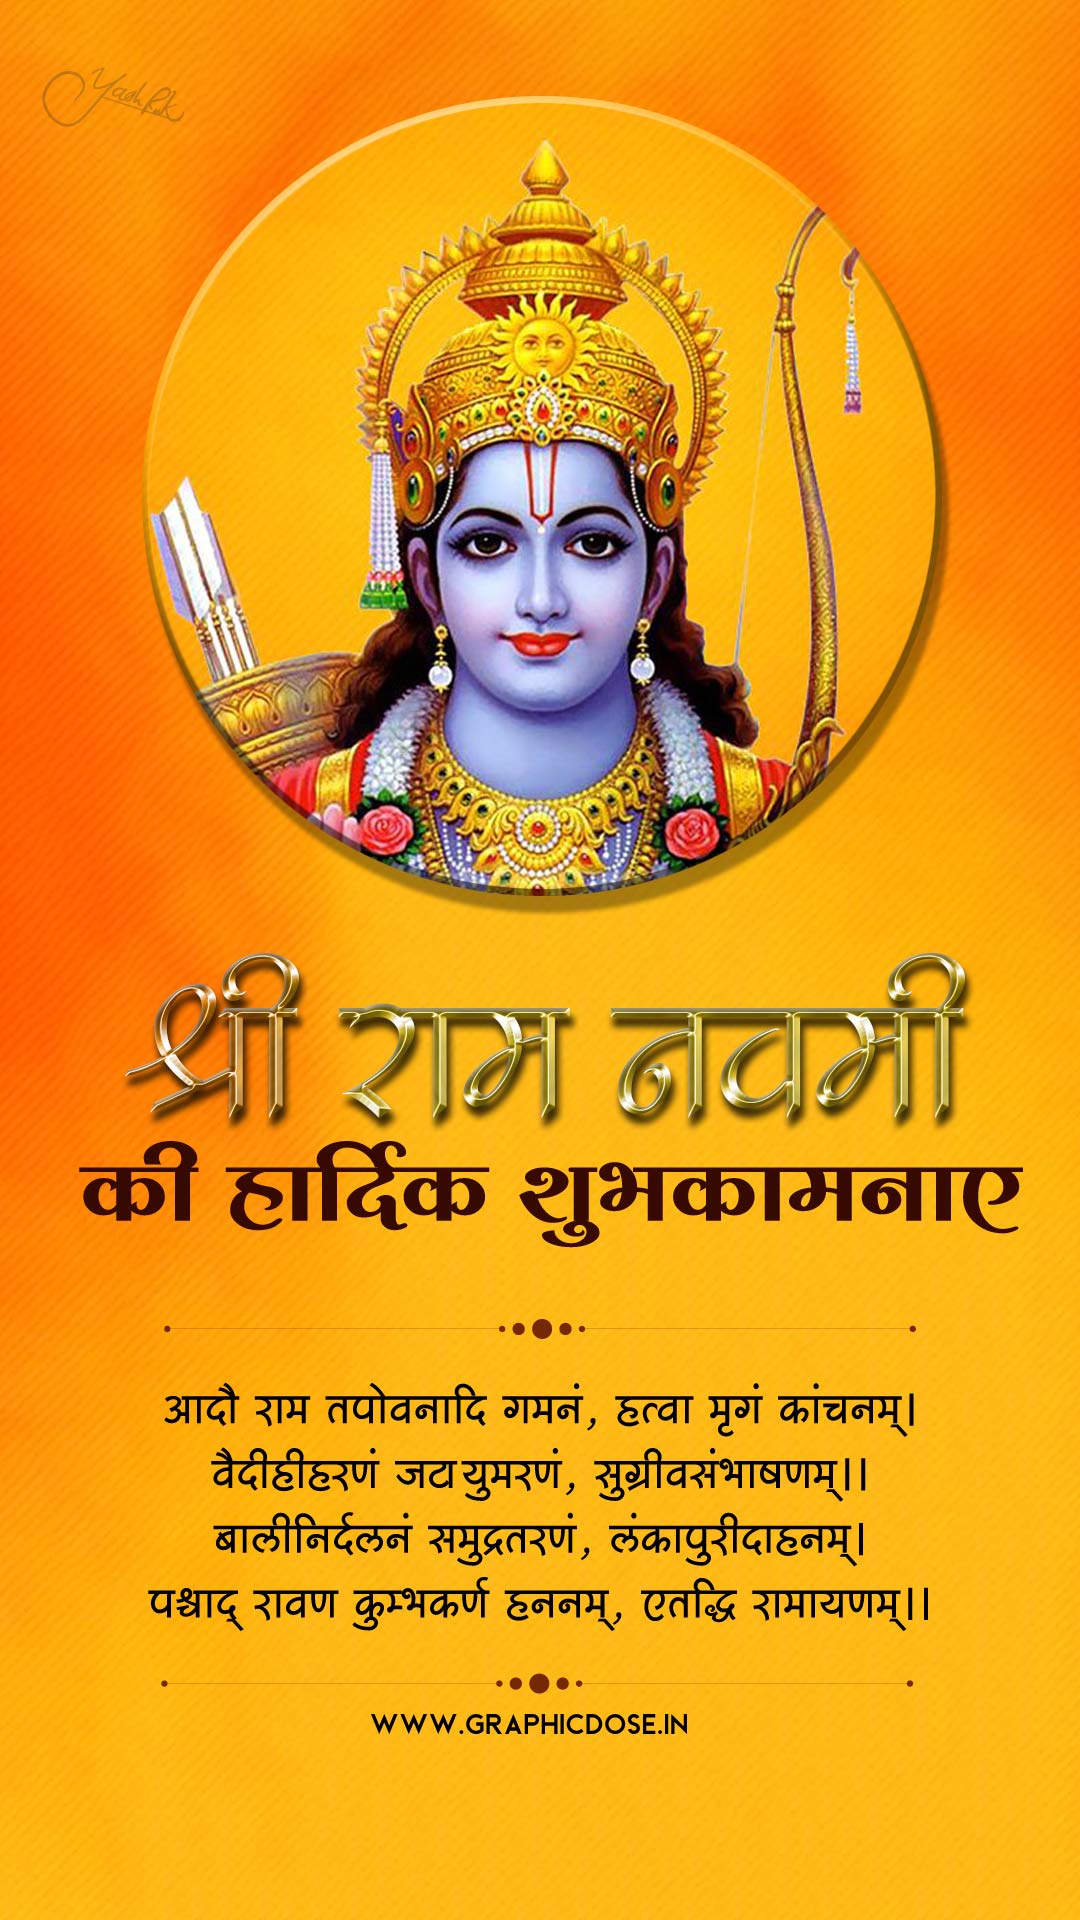 ram navami wishes in sanskrit
